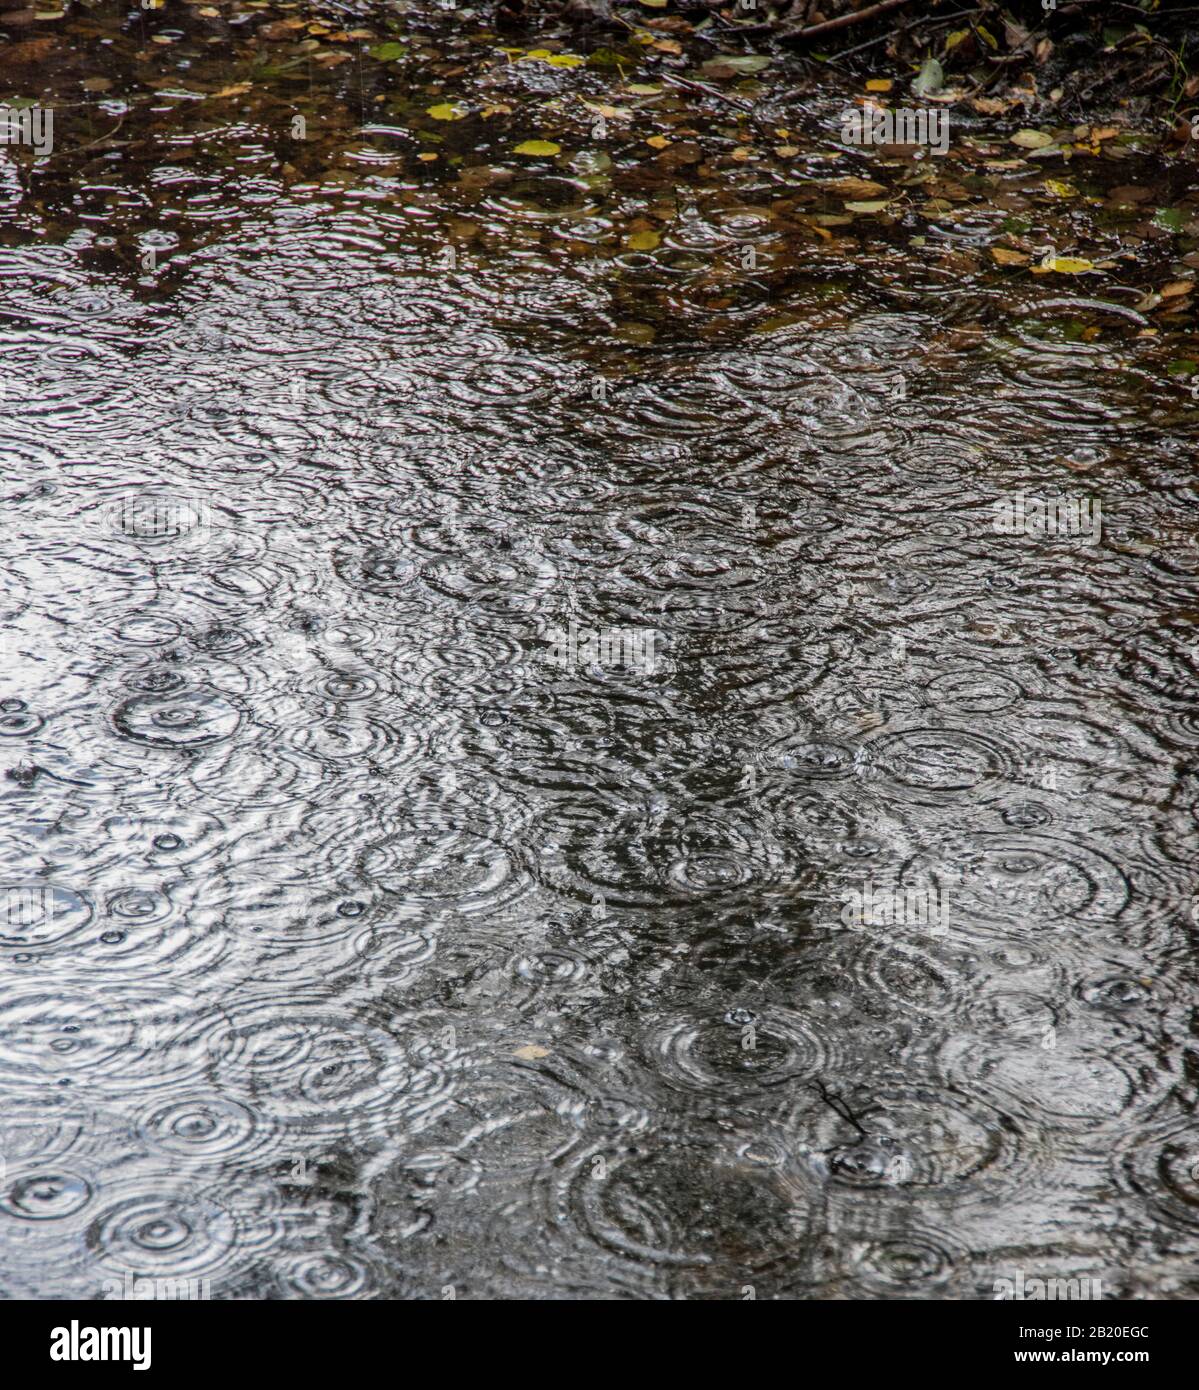 Les gouttes de pluie sur l'eau Banque D'Images